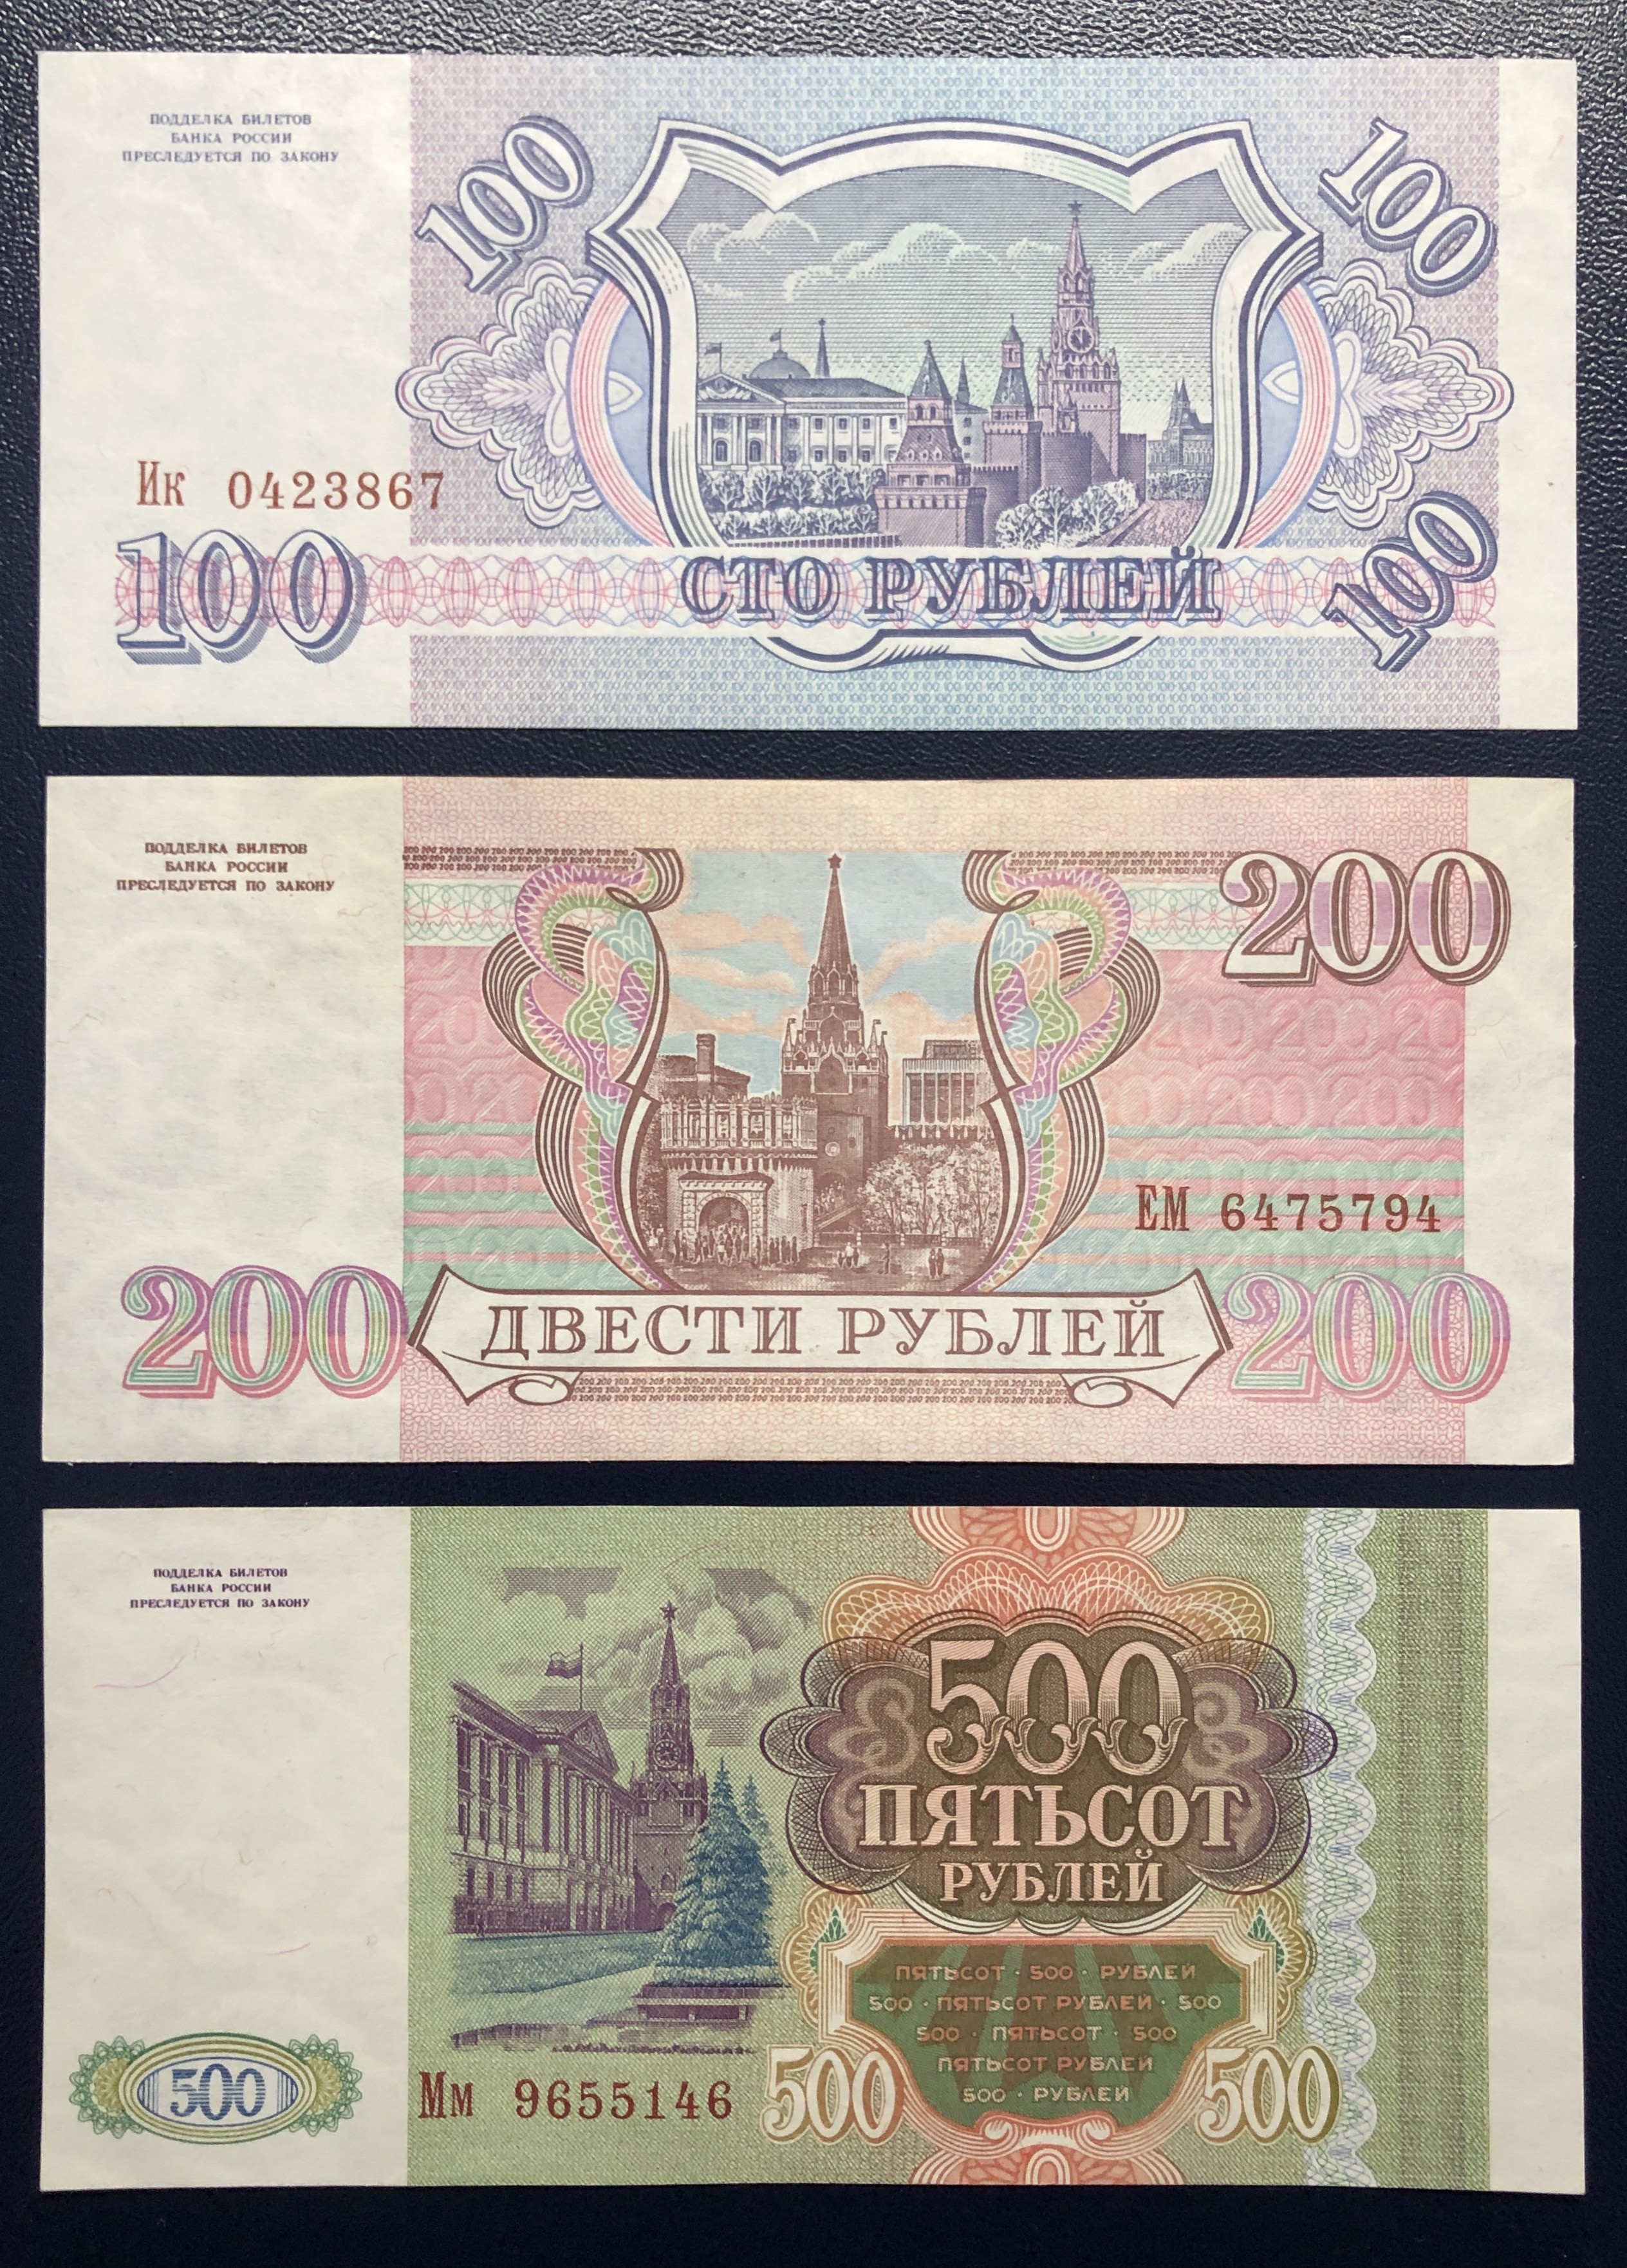 Пятьсот семьдесят рублей. 500 Рублей 1993 UNC. 100 200 500 Рублей 1993 года. 200р 1993 года. 500 Рублей 1993 года бумажные.